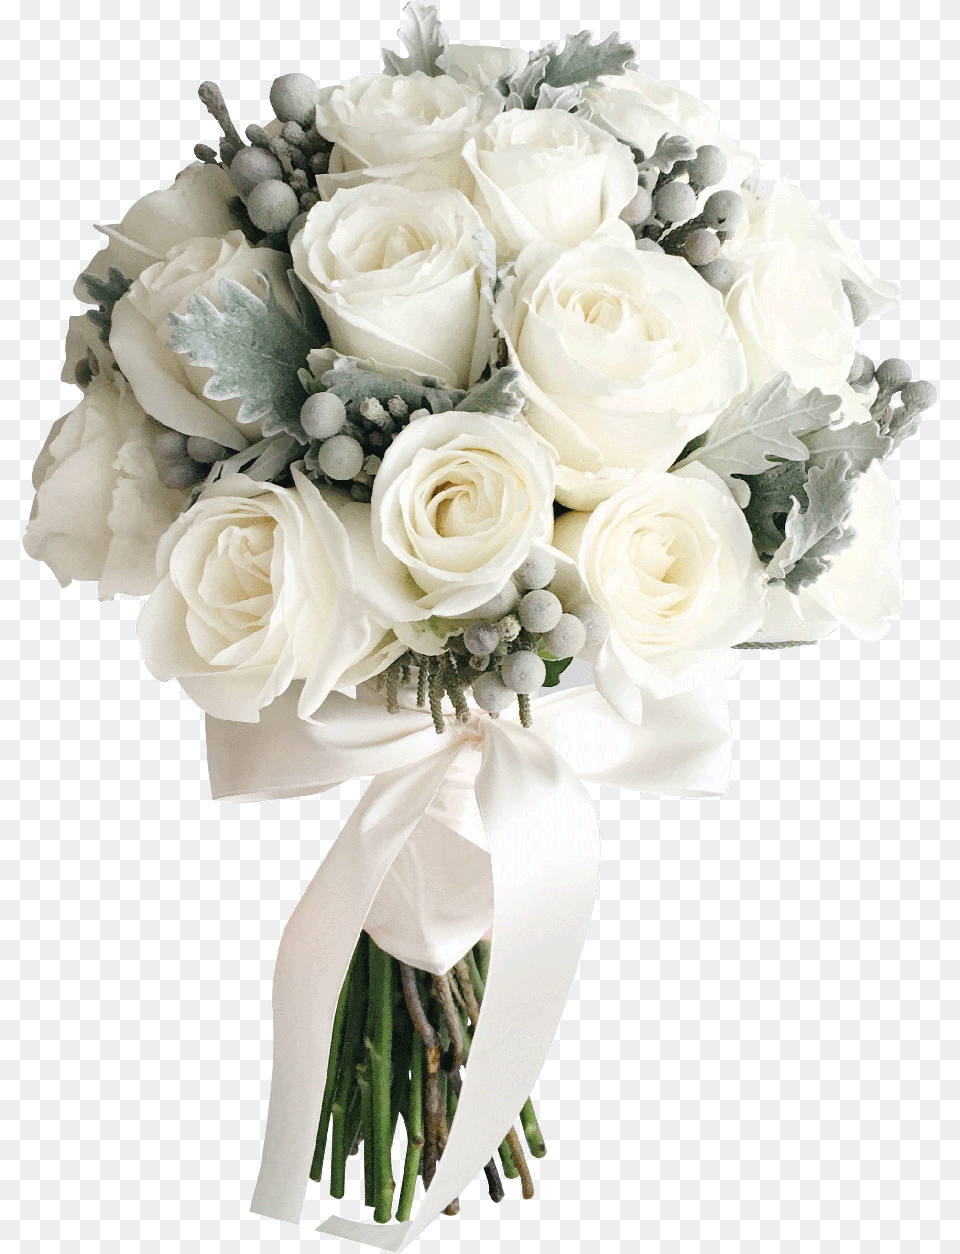 Wedding Bouquet Transparent Background, Flower Bouquet, Rose, Plant, Flower Png